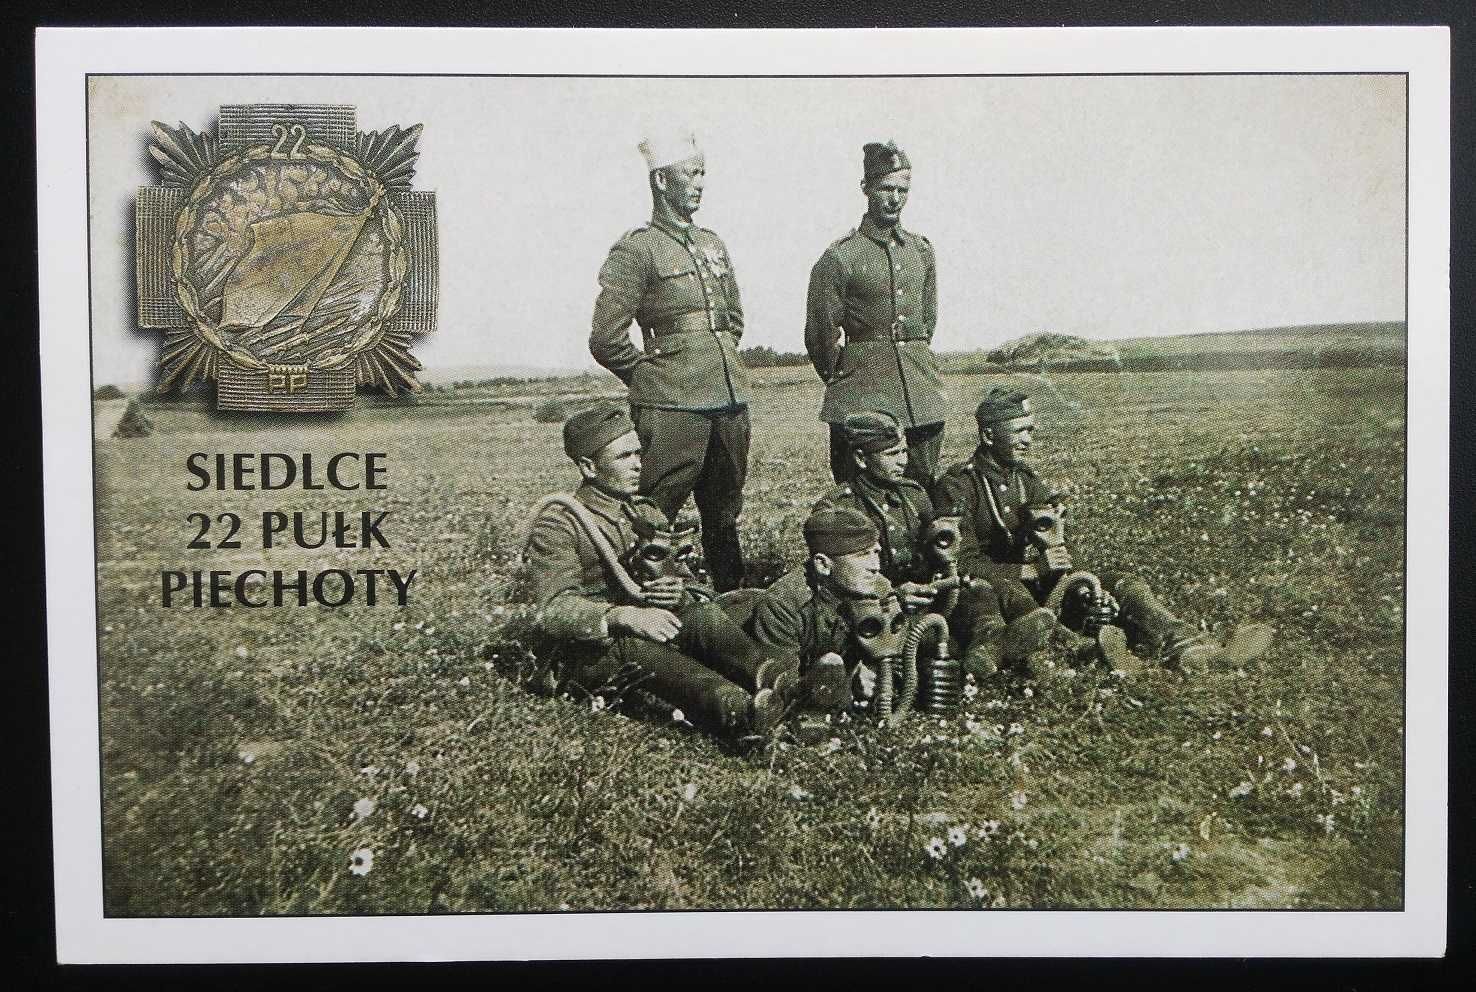 Pocztówka Odznaka 22. Pułk Piechoty Siedlce 1939 r. reprint